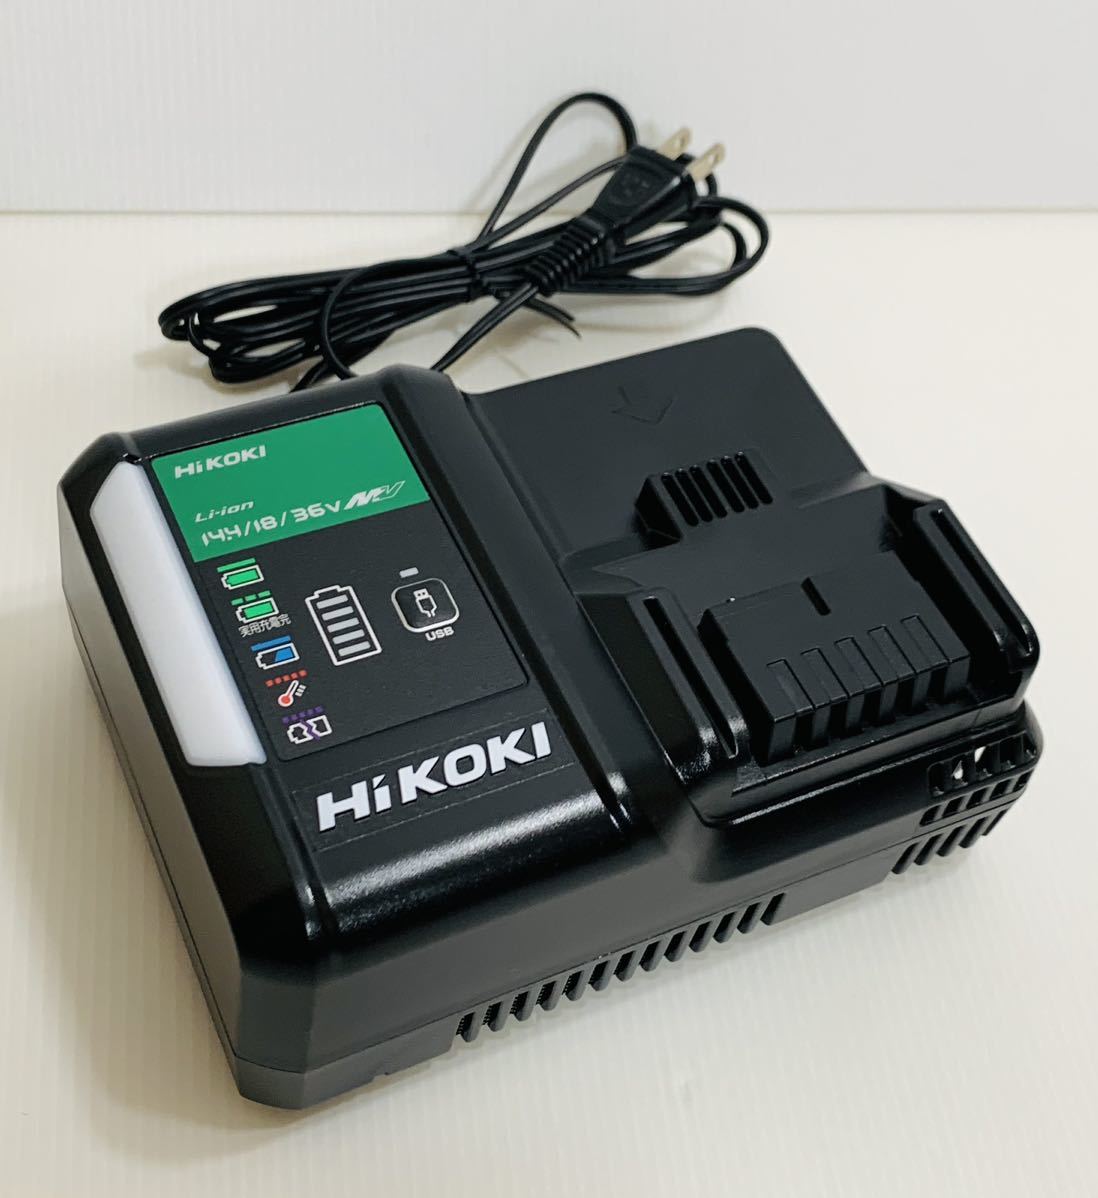 ハイコーキ HiKOKI 急速充電器 UC 18YDL2 本体のみ 入力100V 50/60Hz 480VA 出力DC18-14.4V 12A 通電動作確認済み 工機ホールディングス_画像1